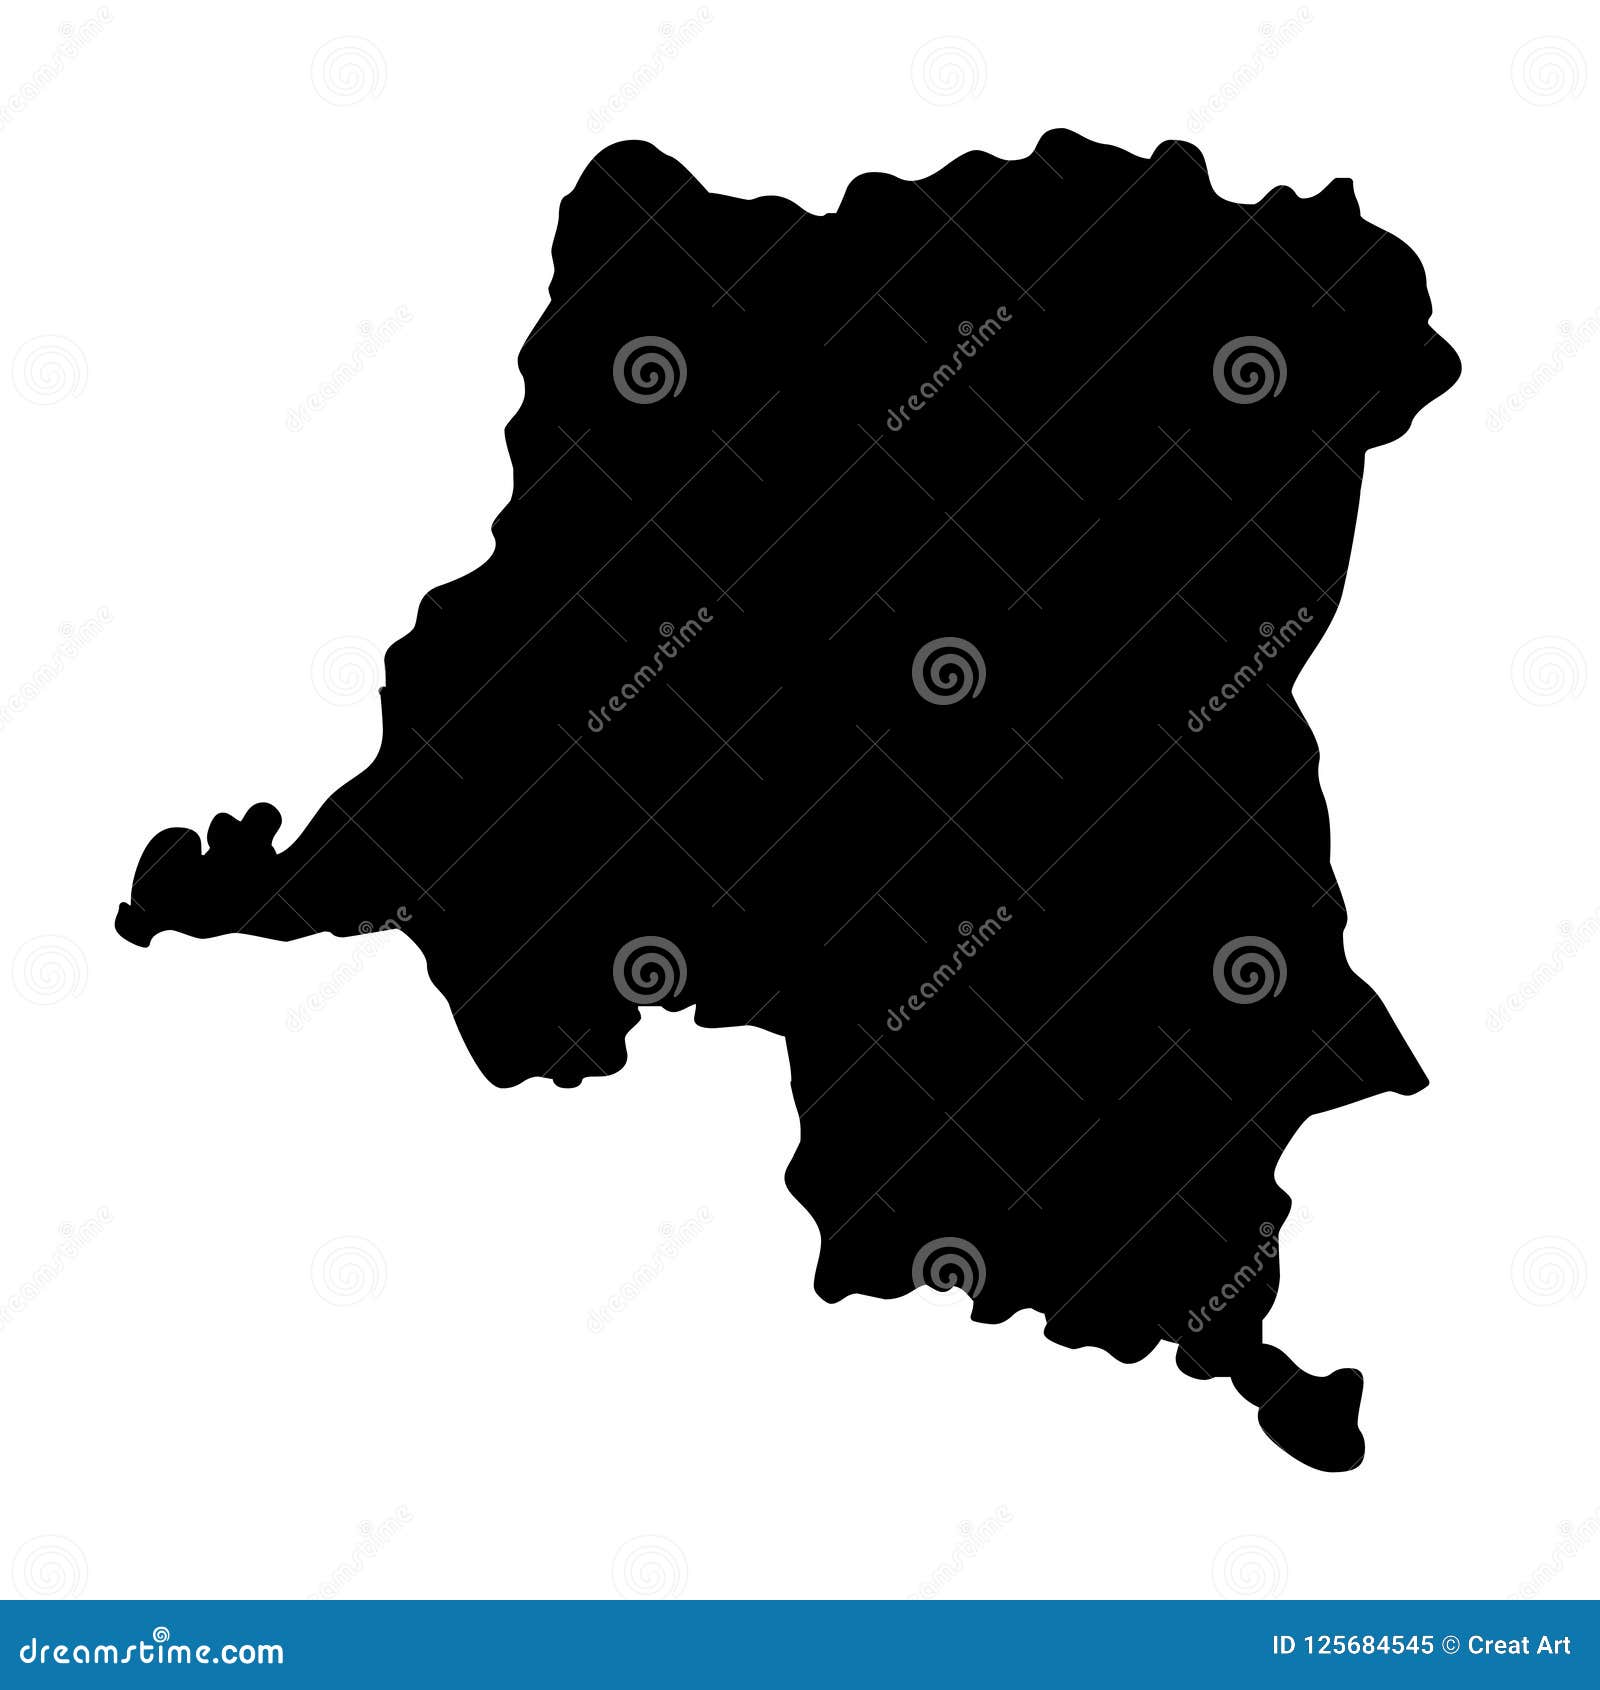 democratic republic of the congo map silhouette  